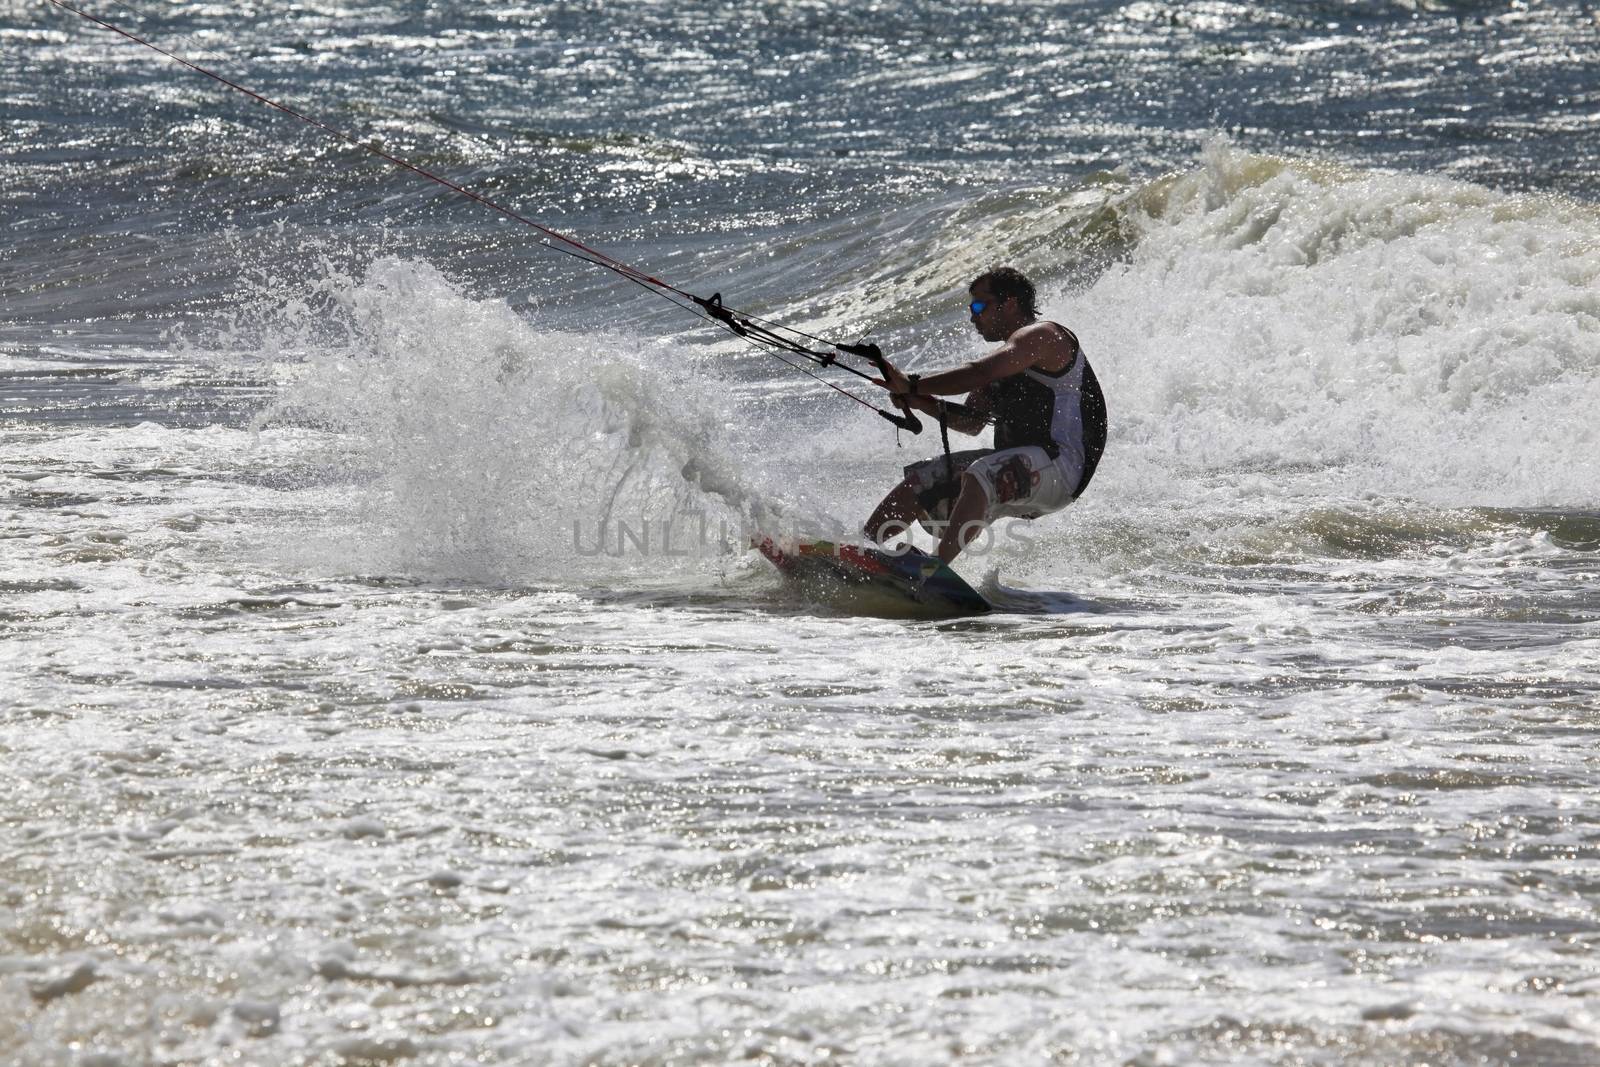 Kiteboarder enjoy surfing in ocean. Vietnam